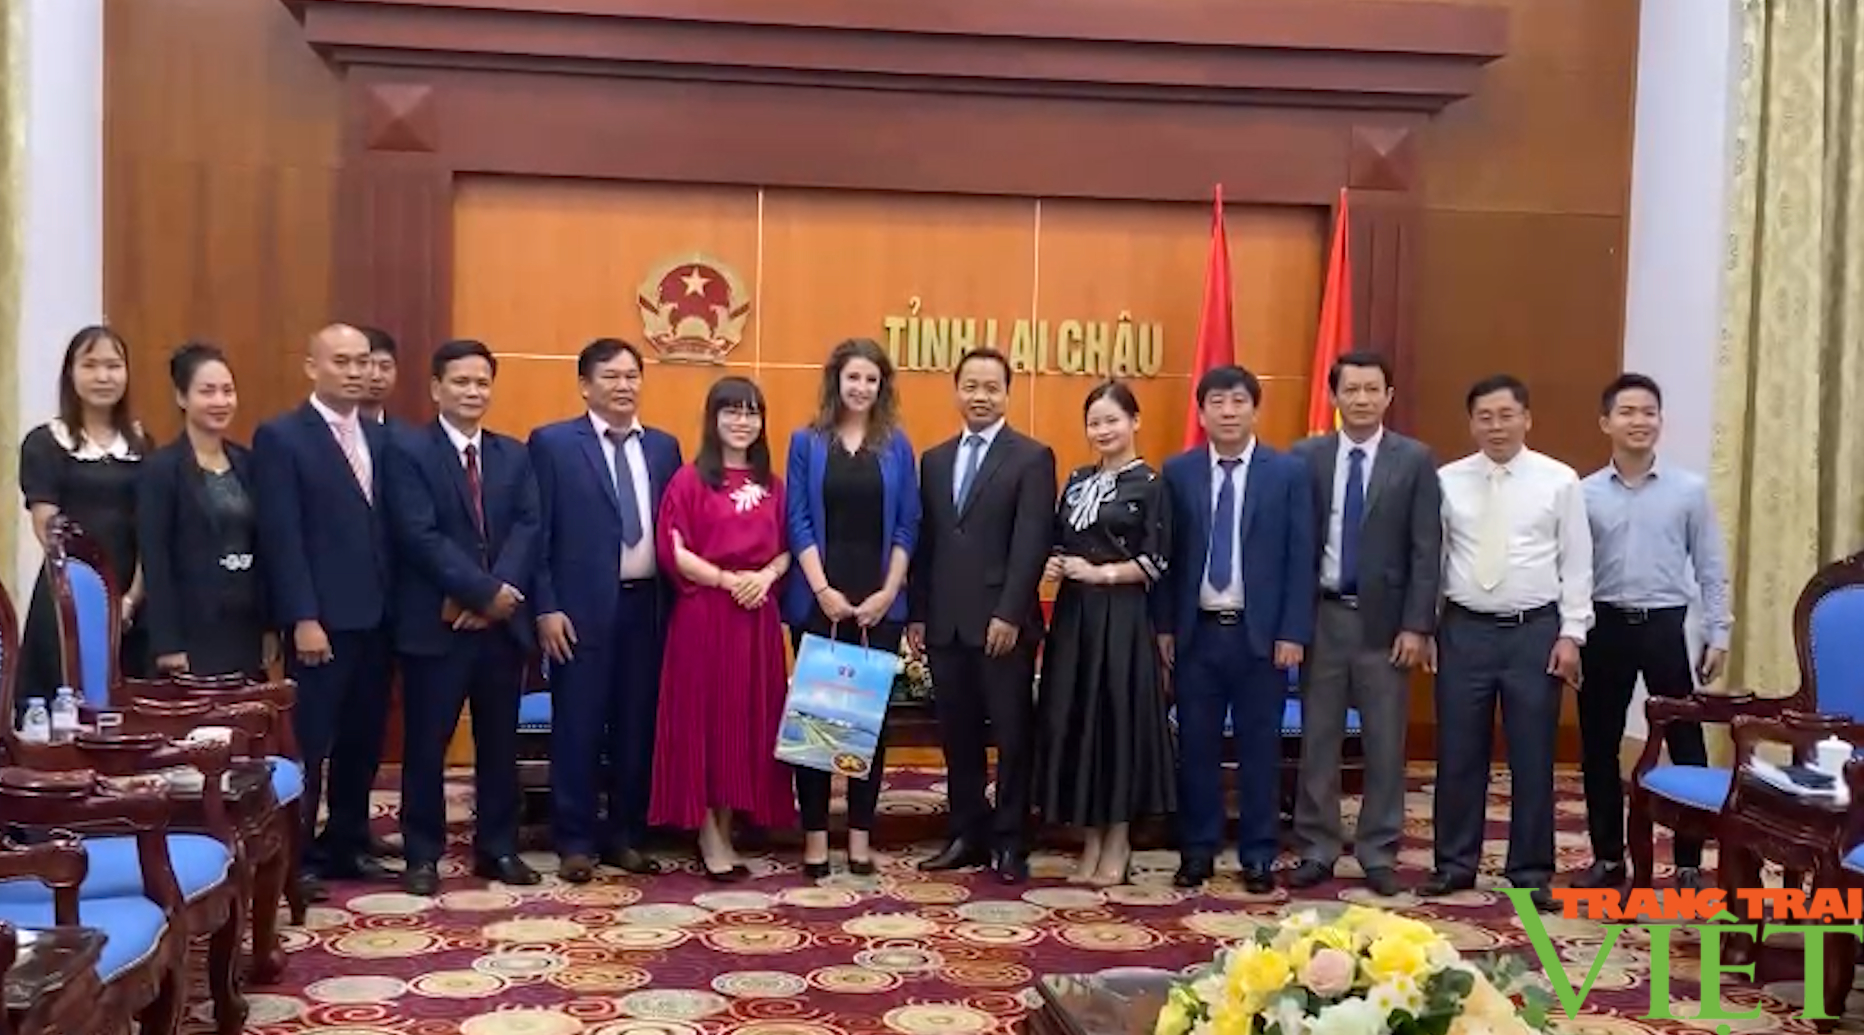 Cộng hoà Séc – Việt Nam: Cơ hội hợp tác trên nhiều lĩnh vực ở Lai Châu - Ảnh 5.